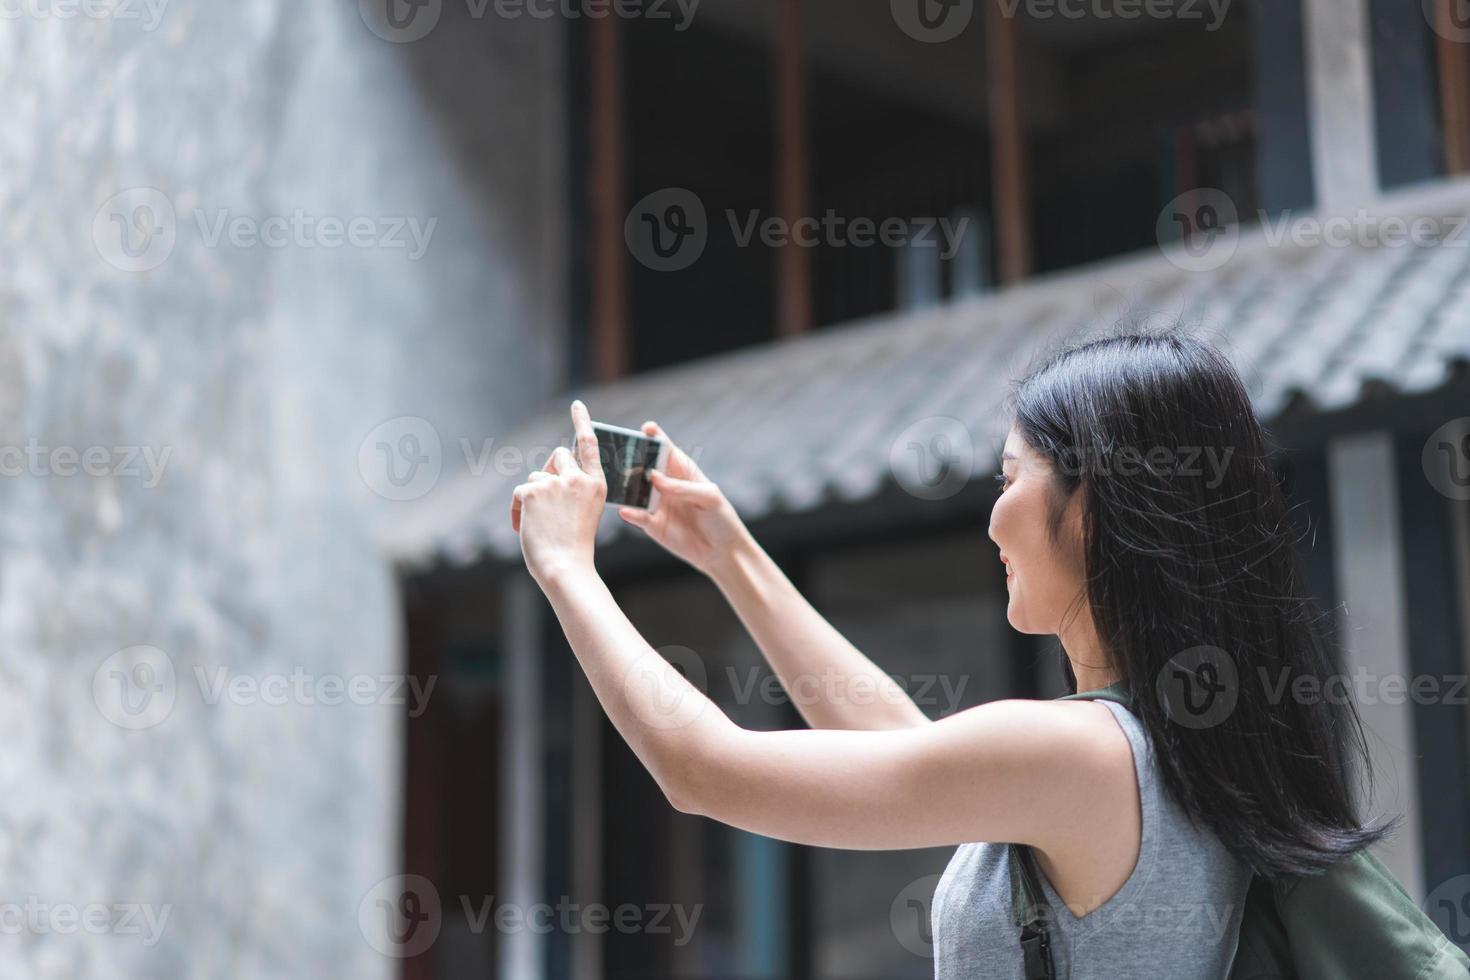 reisende asiatische frau, die handy verwendet, um ein foto zu machen, während sie urlaubsreise in peking, china, verbringt, frau genießen reise an erstaunlichem wahrzeichen in der stadt. Lifestyle-Frauen reisen im Stadtkonzept.